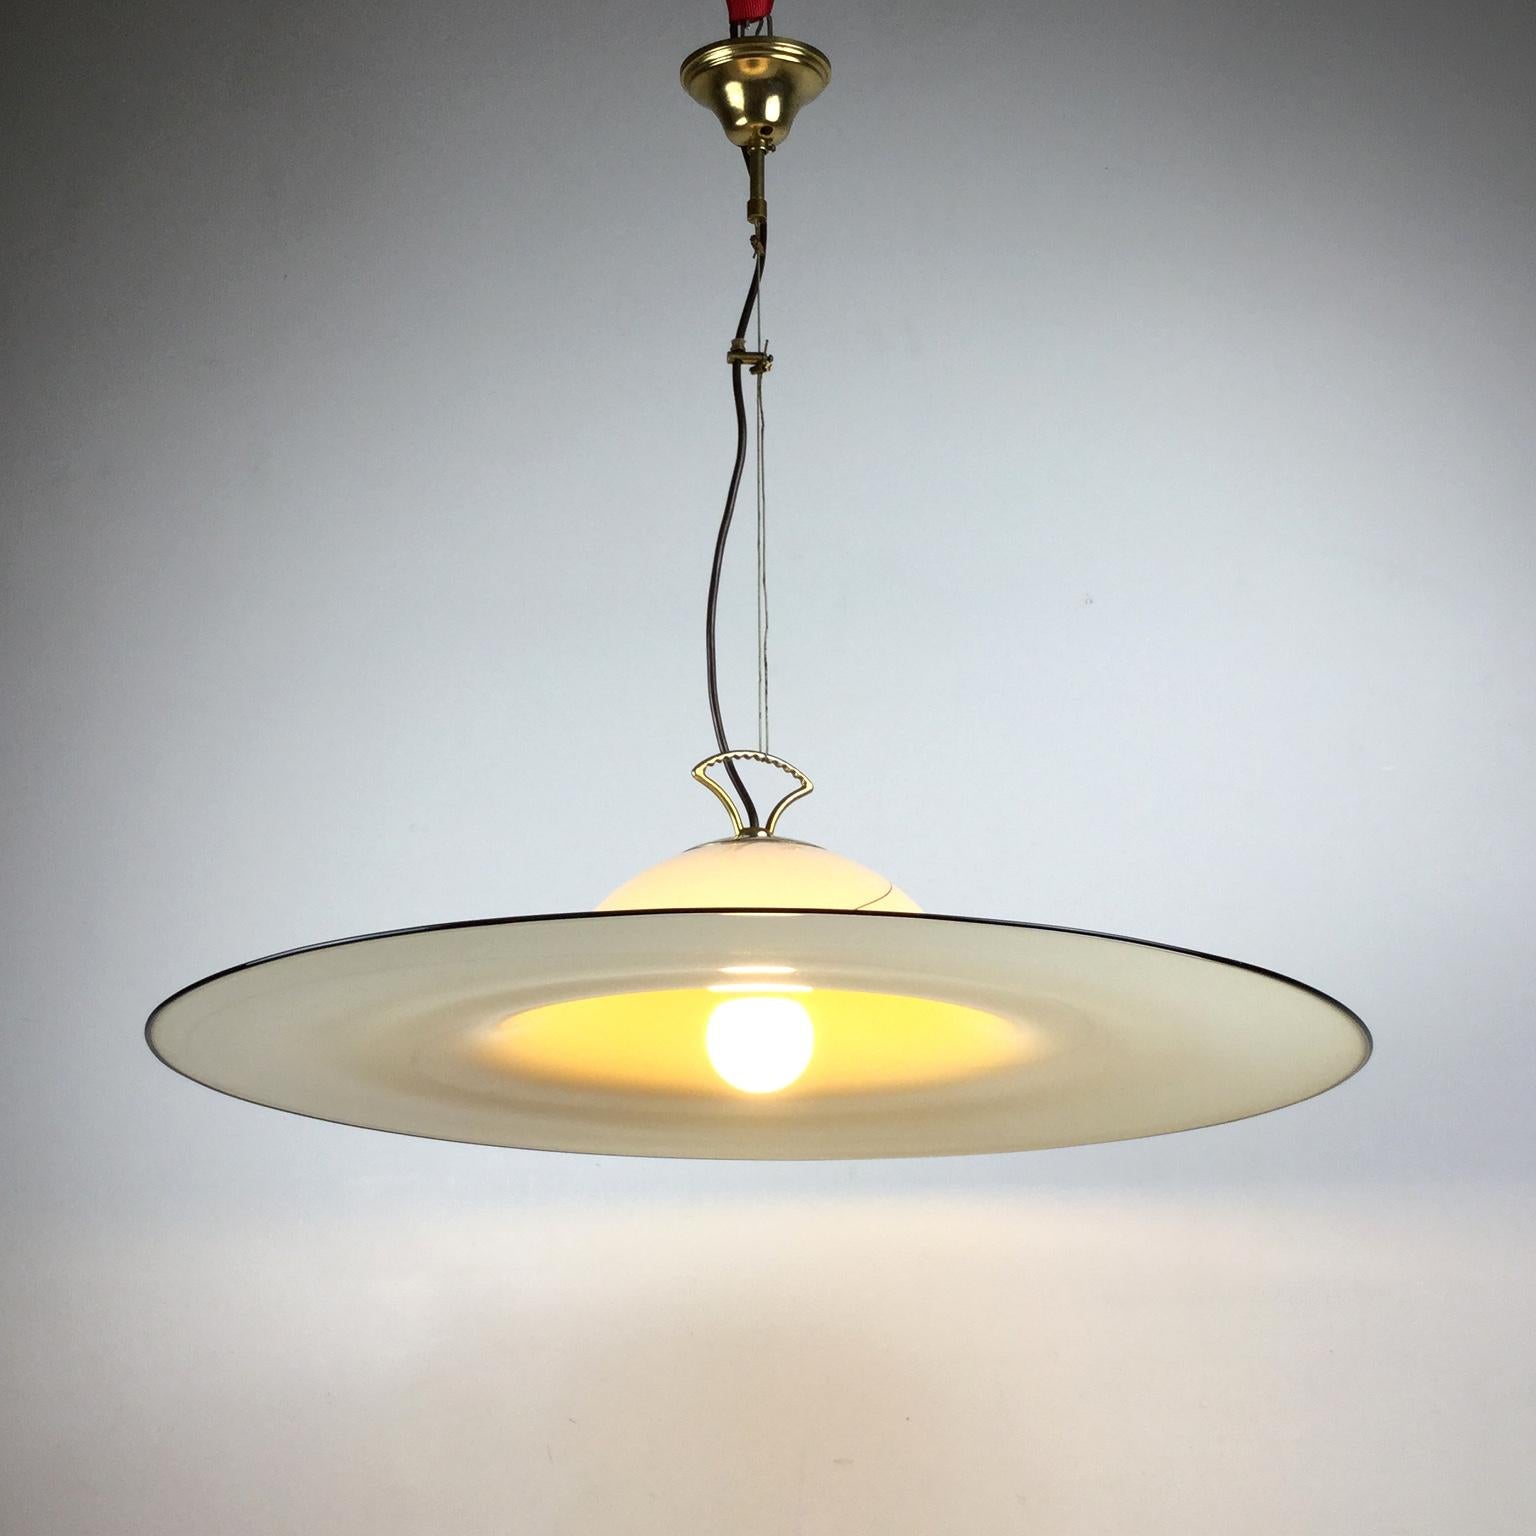 1980s Murano Italian Glass Pendant Lamp Attributed to Seguso Vetri d'Arte For Sale 3